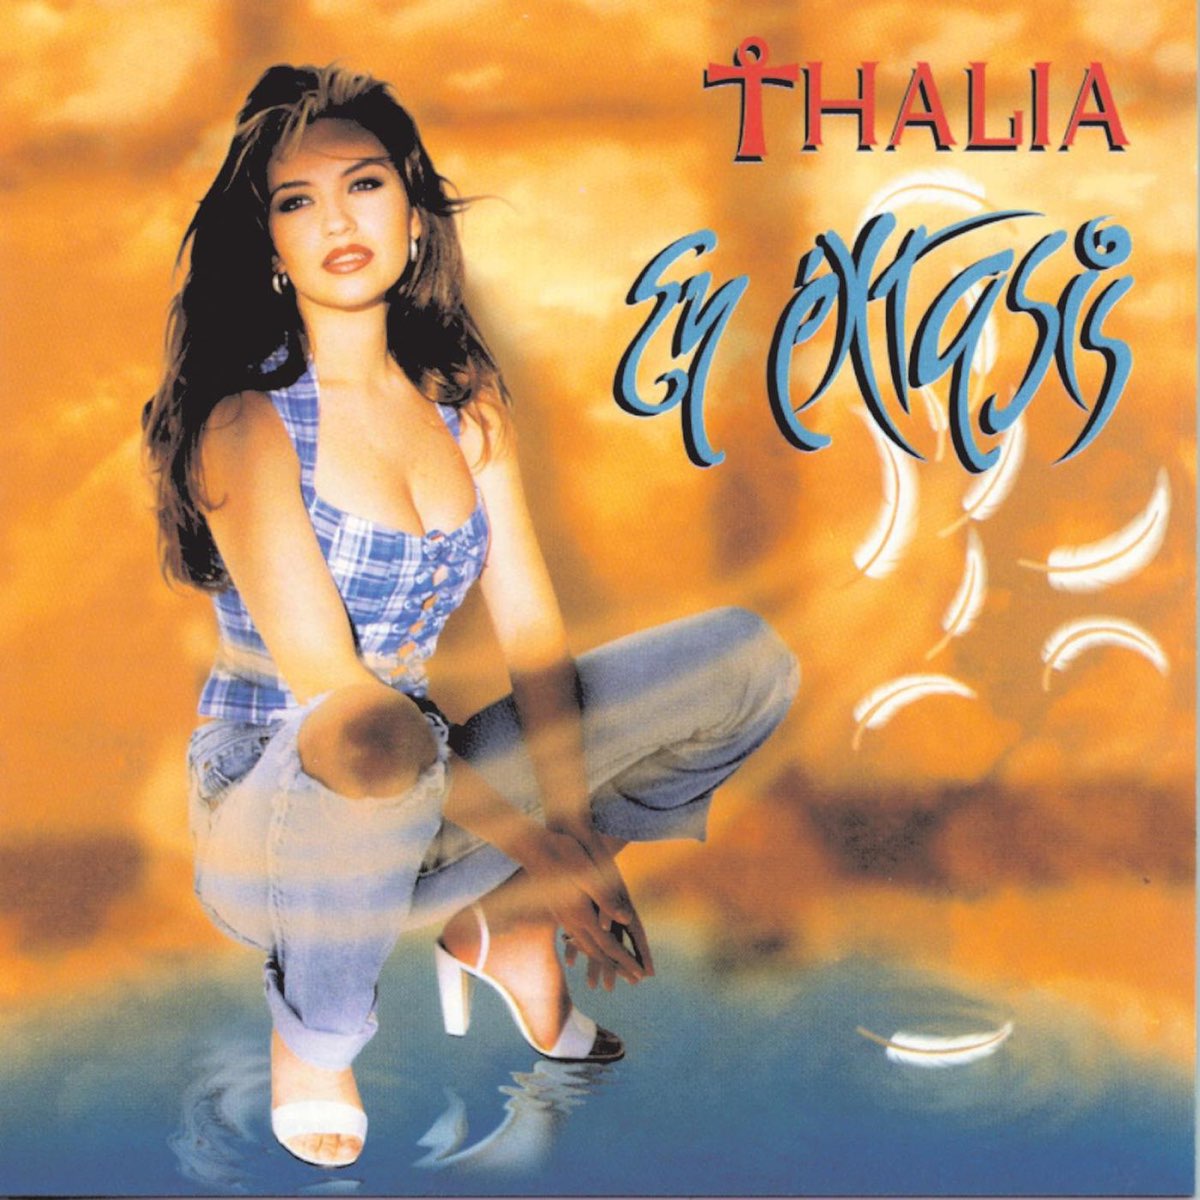 Thalía En éxtasis cover artwork